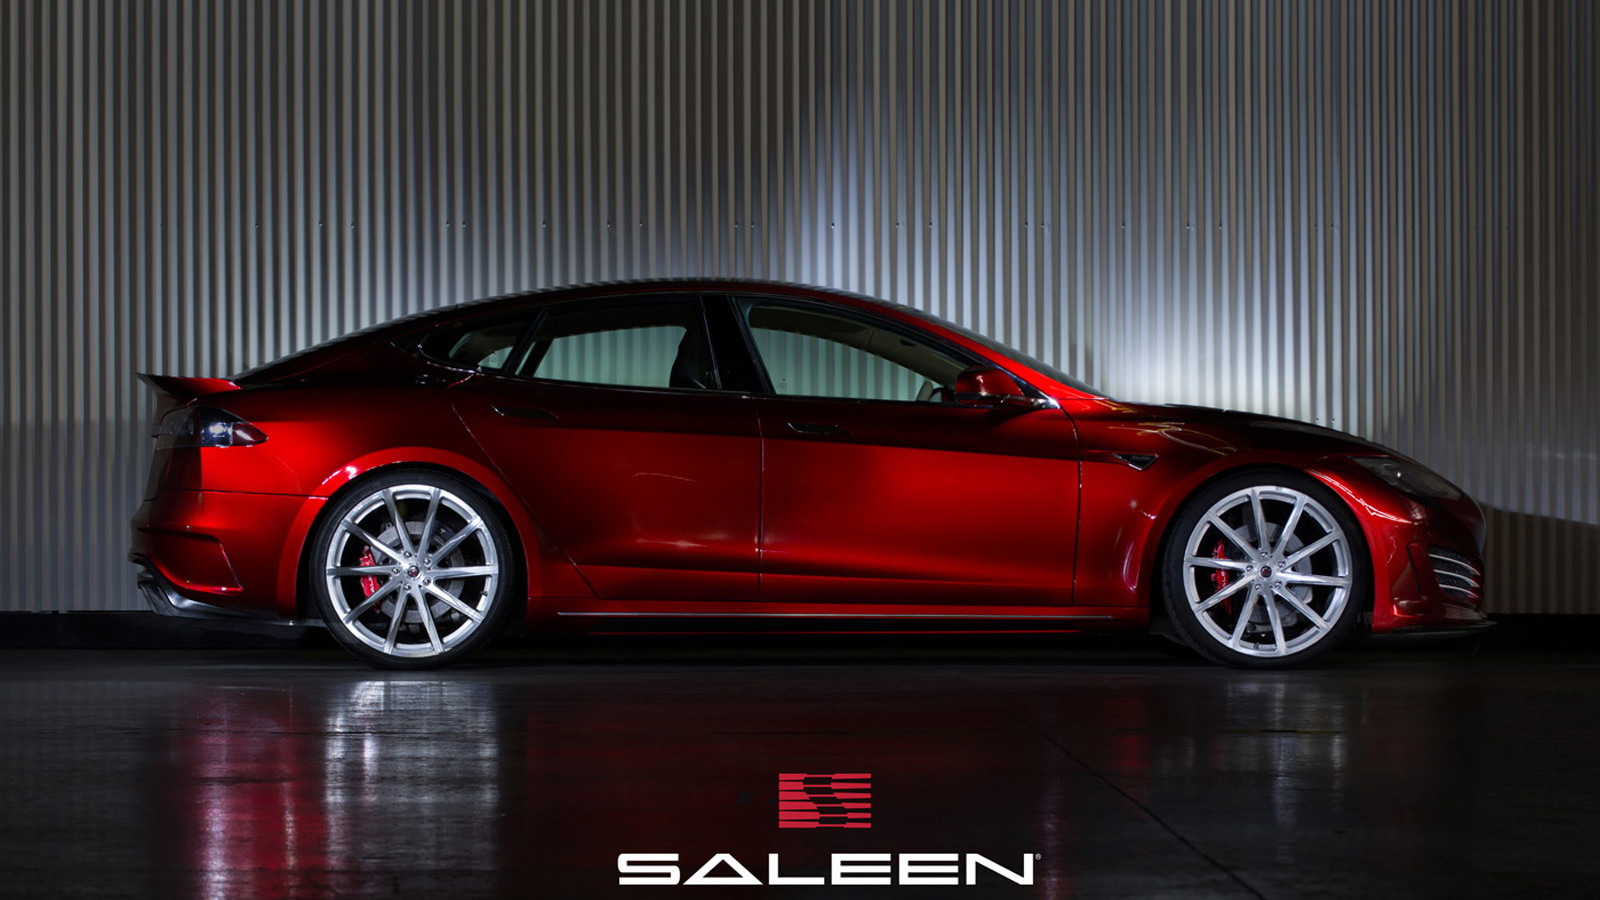 Saleen FourSixteen based on the Tesla Model S